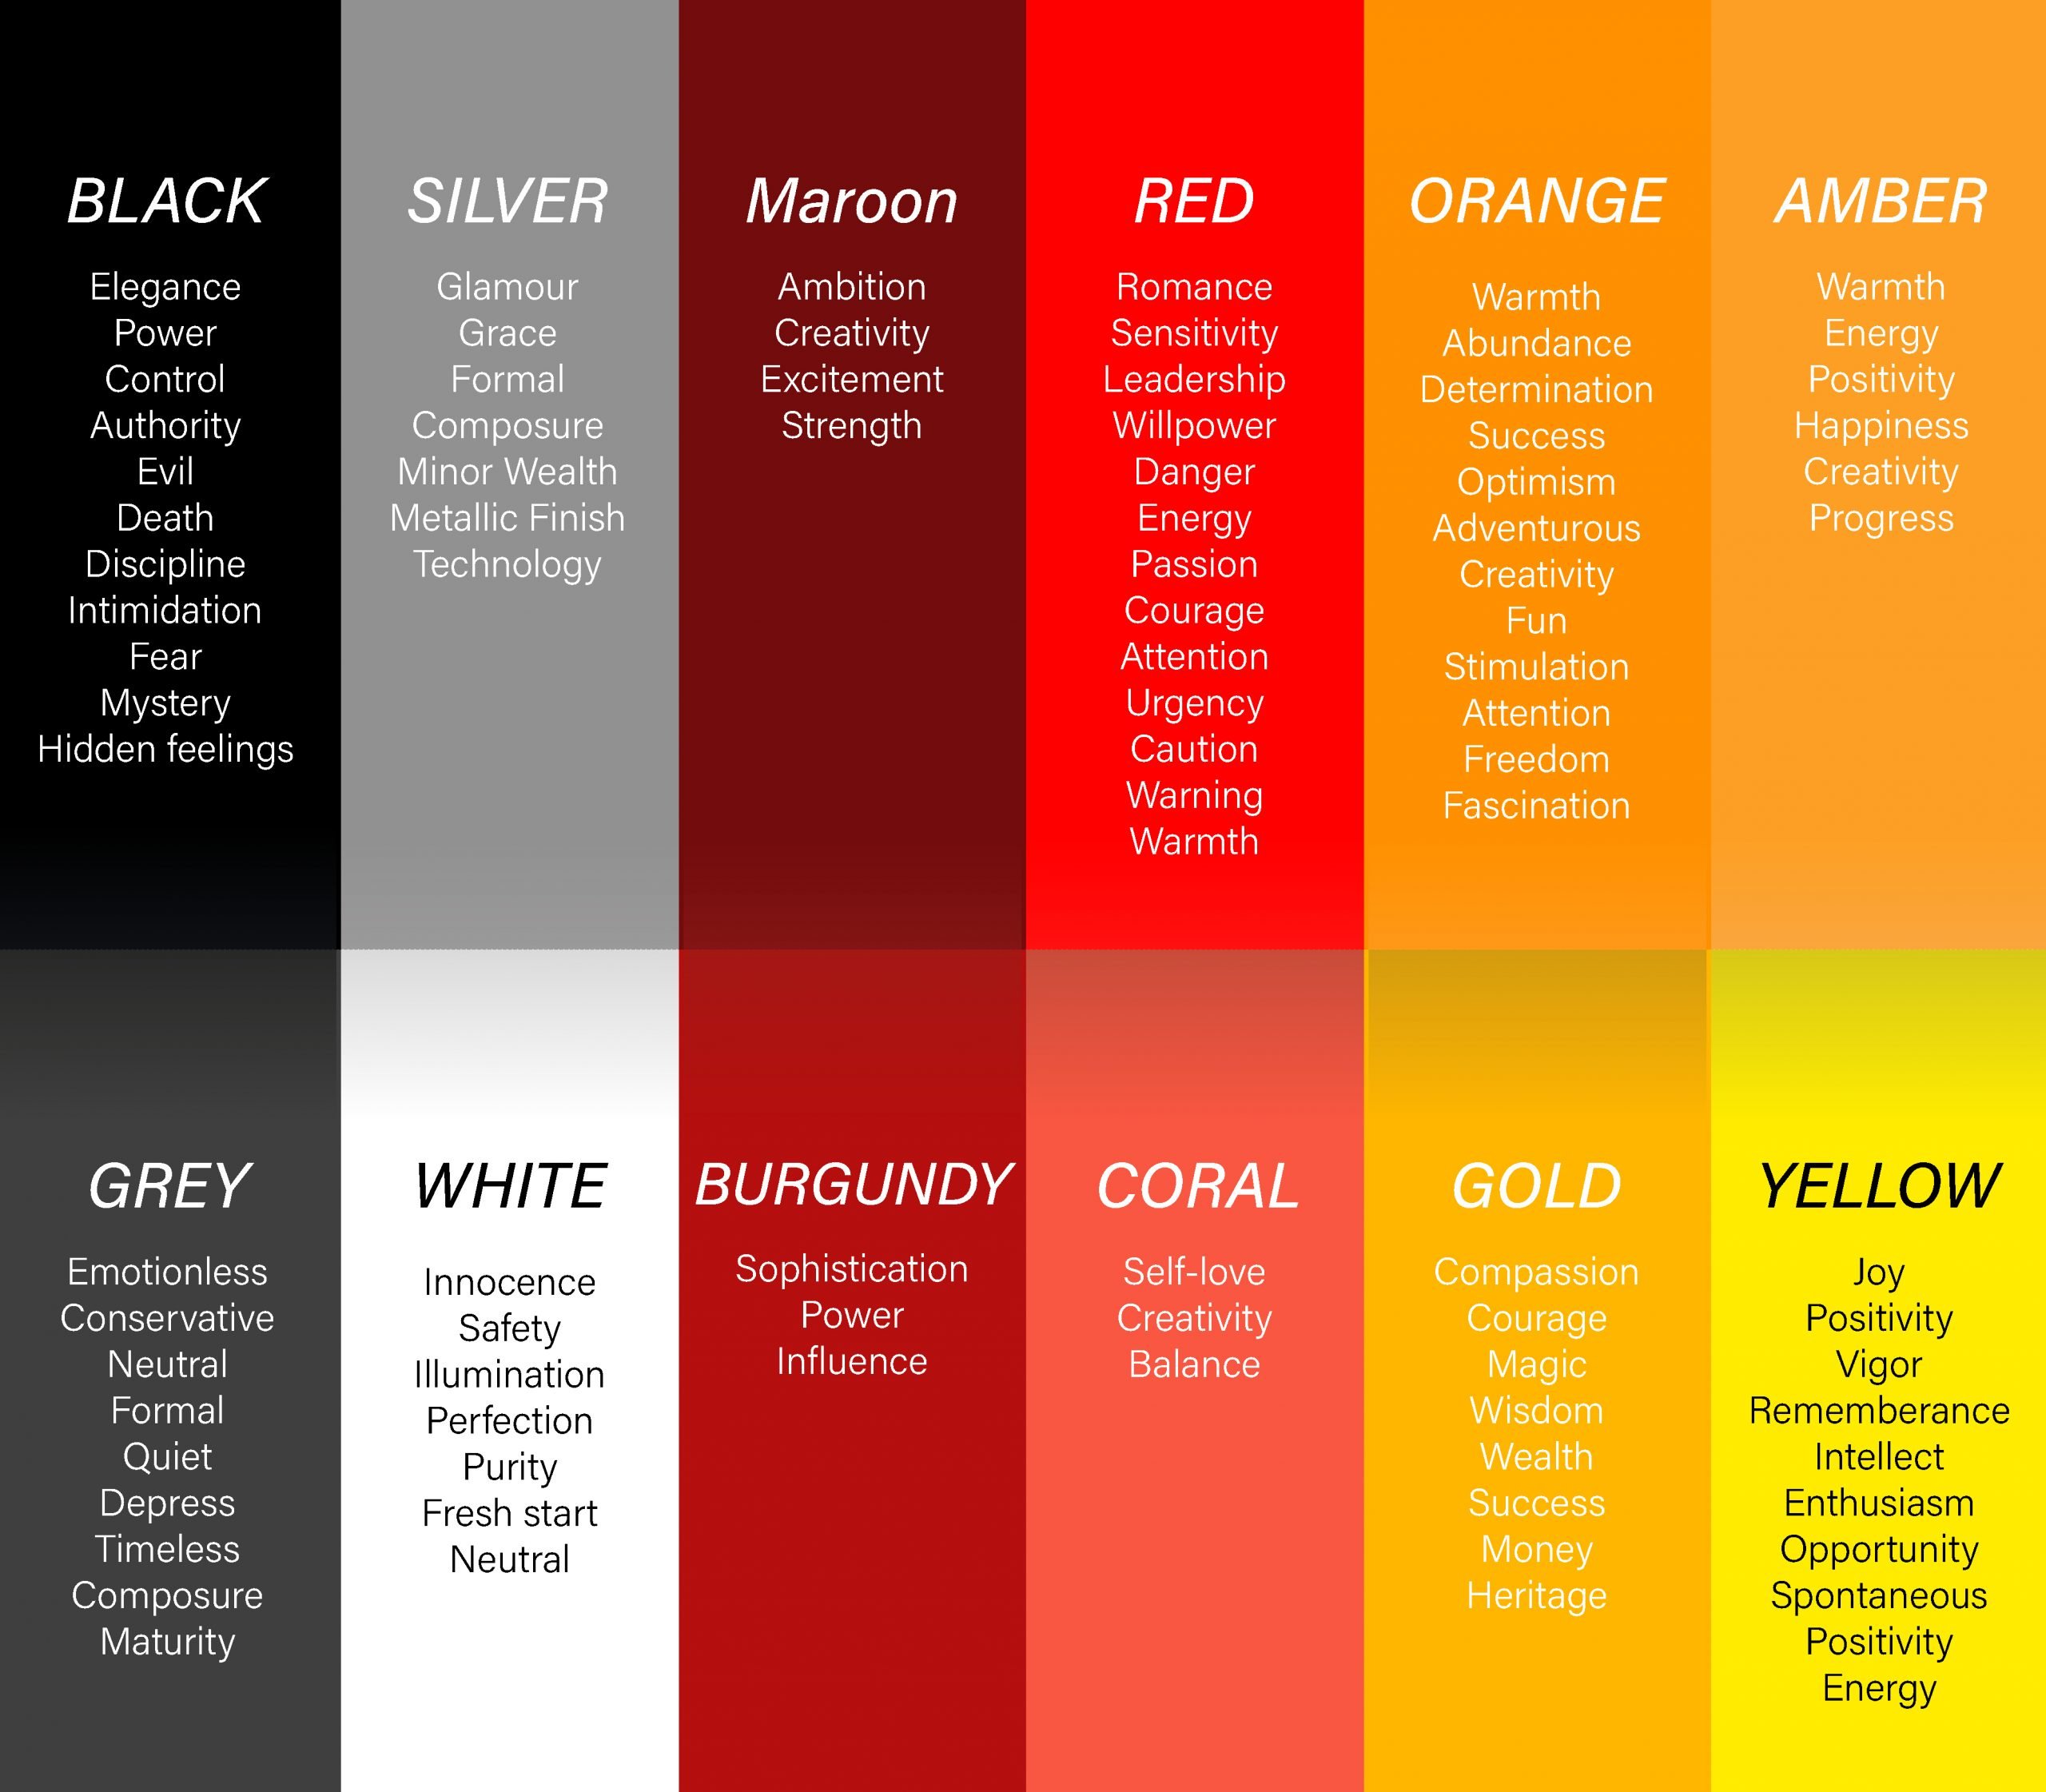 En grafik af "farvepsykologi"hvilket indikerer egenskaber og karakteristika, som almindeligvis er forbundet med visse farver i det røde, orange, gule og grå område.